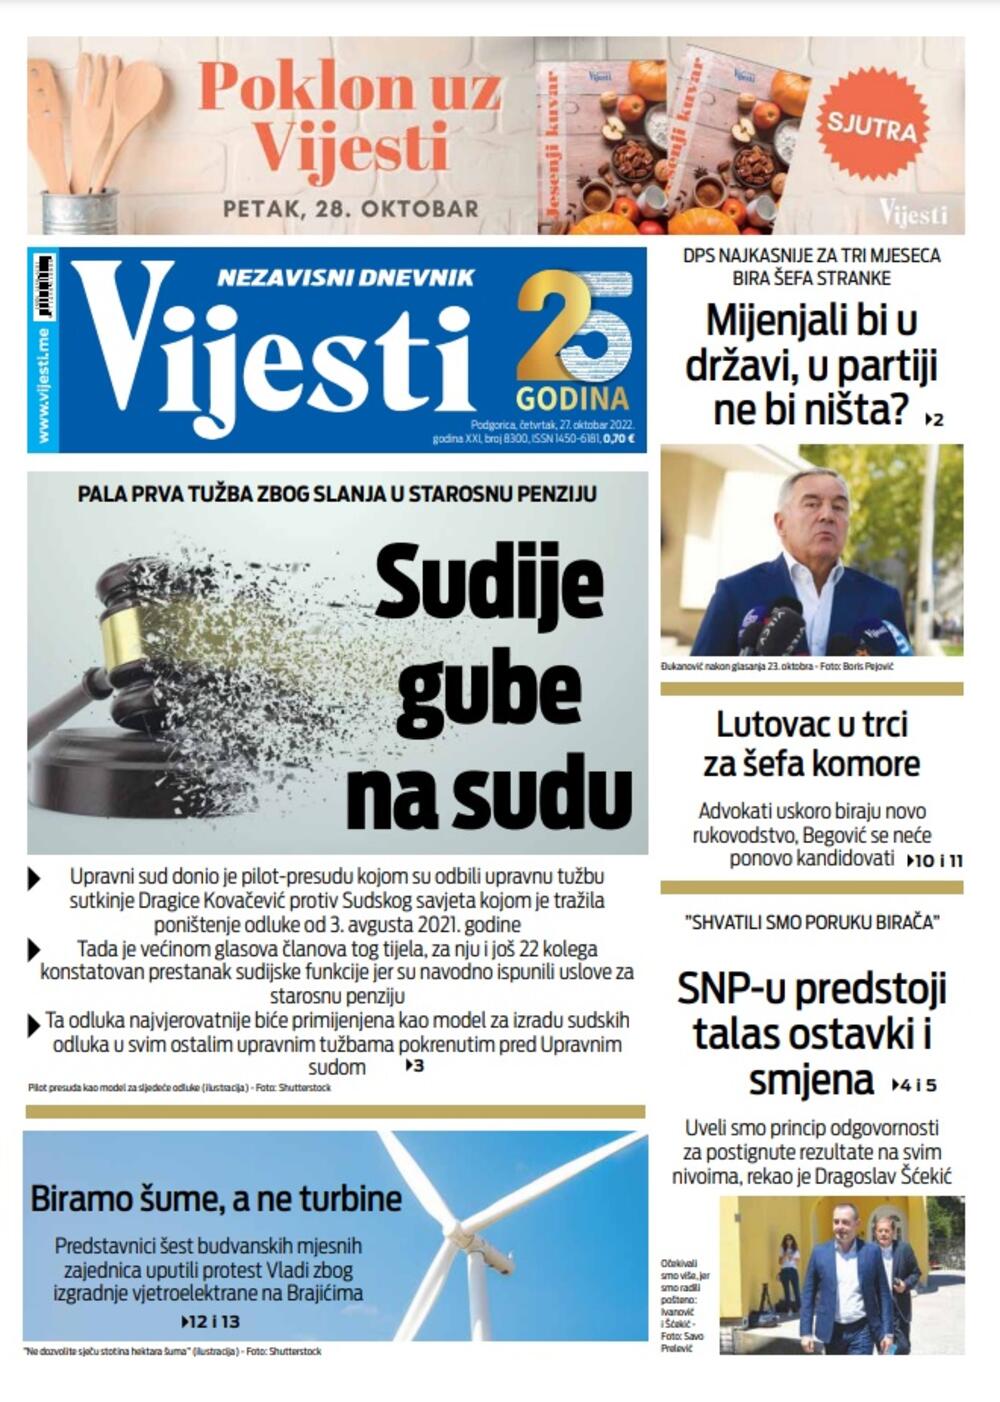 Naslovna strana "Vijesti" za 27. oktobar 2022. godine, Foto: Vijesti